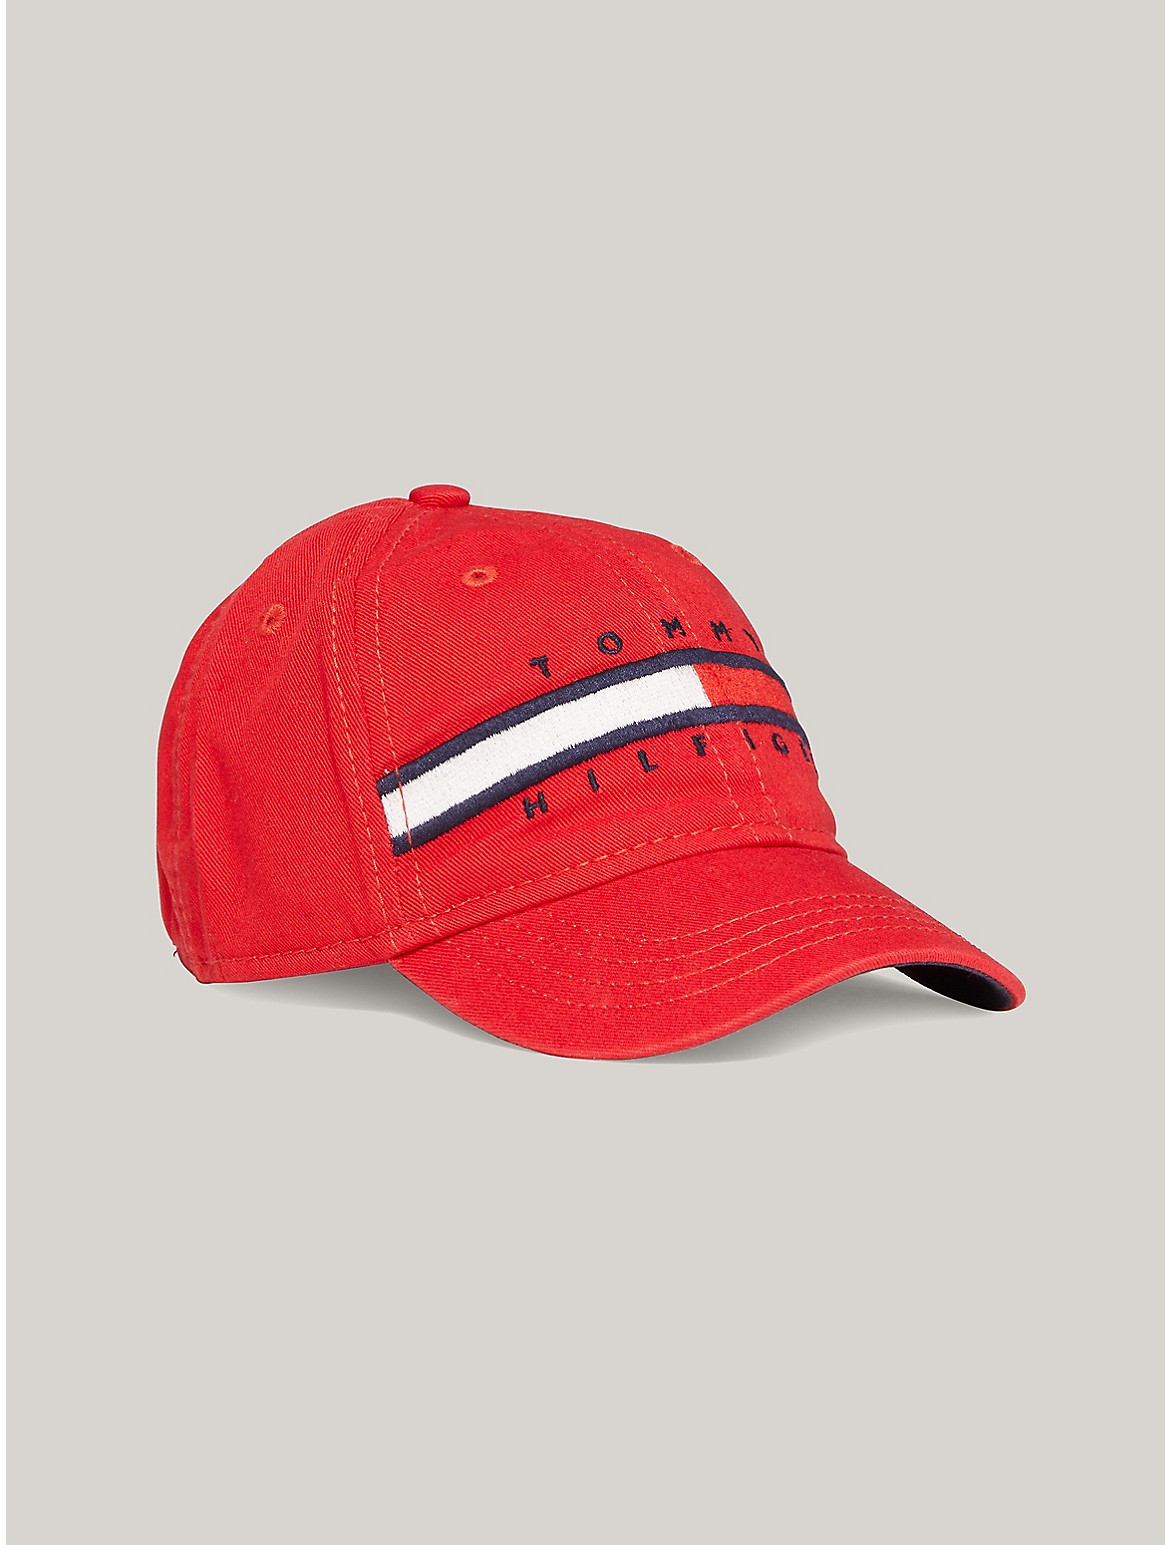 Tommy Hilfiger Kids' Flag Stripe Logo Baseball Cap - Red - M